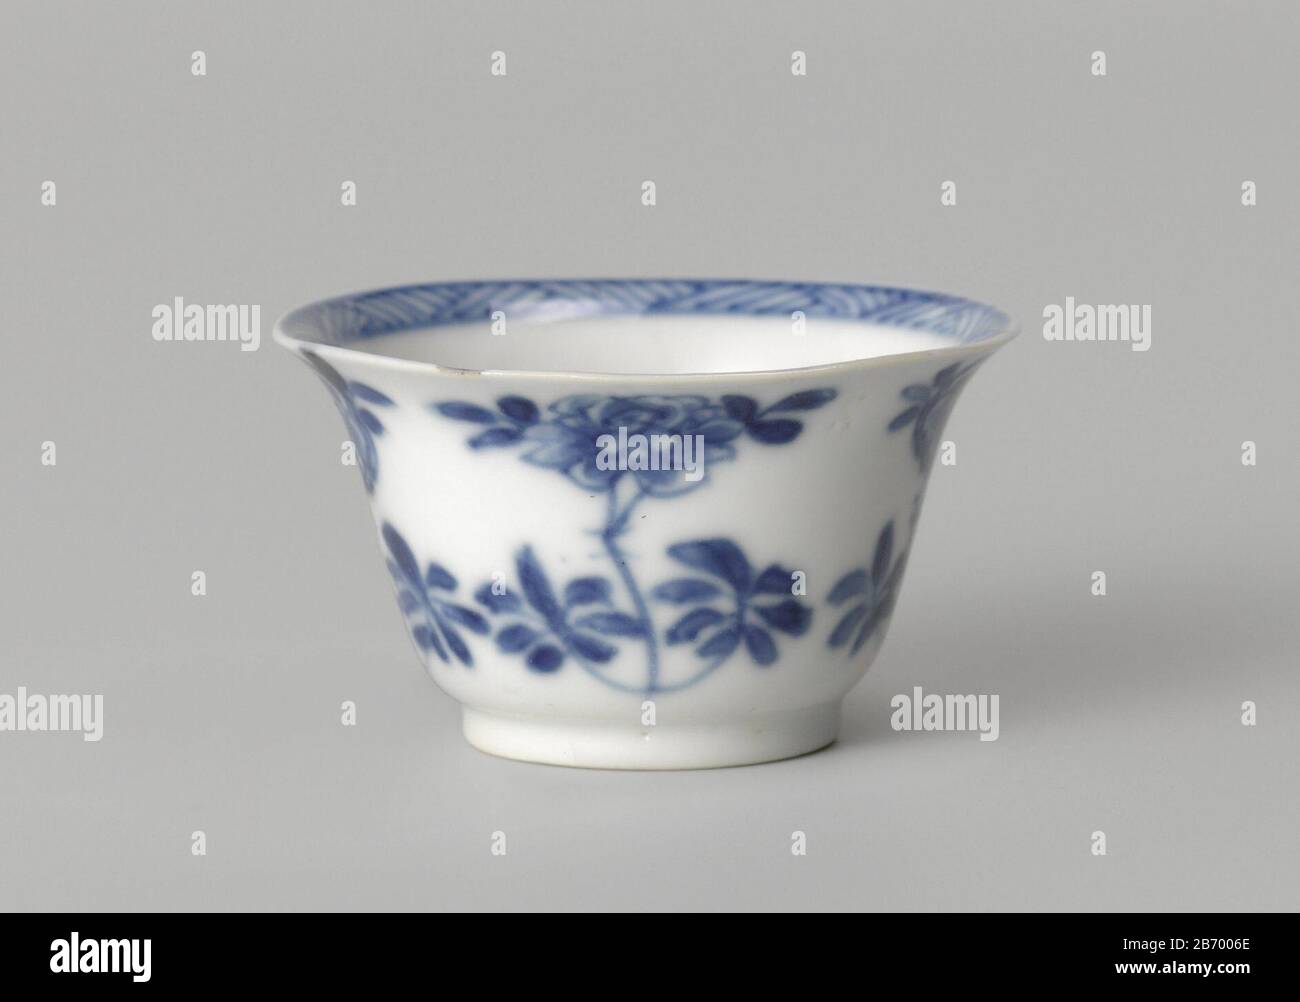 Klokvormige kop ha incontrato bloemtakken Klokvormige kop van porselein, beschilderd in onderglazuur blauw. Op de buitenwand bloemtakken (pioen, prunus). Op de bodem een bloemtak en de binnenrand ha incontrato arceerwerk. Blauw-wit. Produttore : pottenbakker: AnoniemPlaats fabbricante: China Dating: CA. 1700 - ca. 1724School / stijl: Qing-dynasie (1644-1912) / Kangxi-periode (1662-1722) / Yongzheng-periode (1723-1735) Kenmerken Fisico: Porselein met onderglazuur blauw Materiale: Porselein glazuur techniek: Draaiend kobwerken / bakken / Rschurderzen Dimensions: 2 cm. Foto Stock